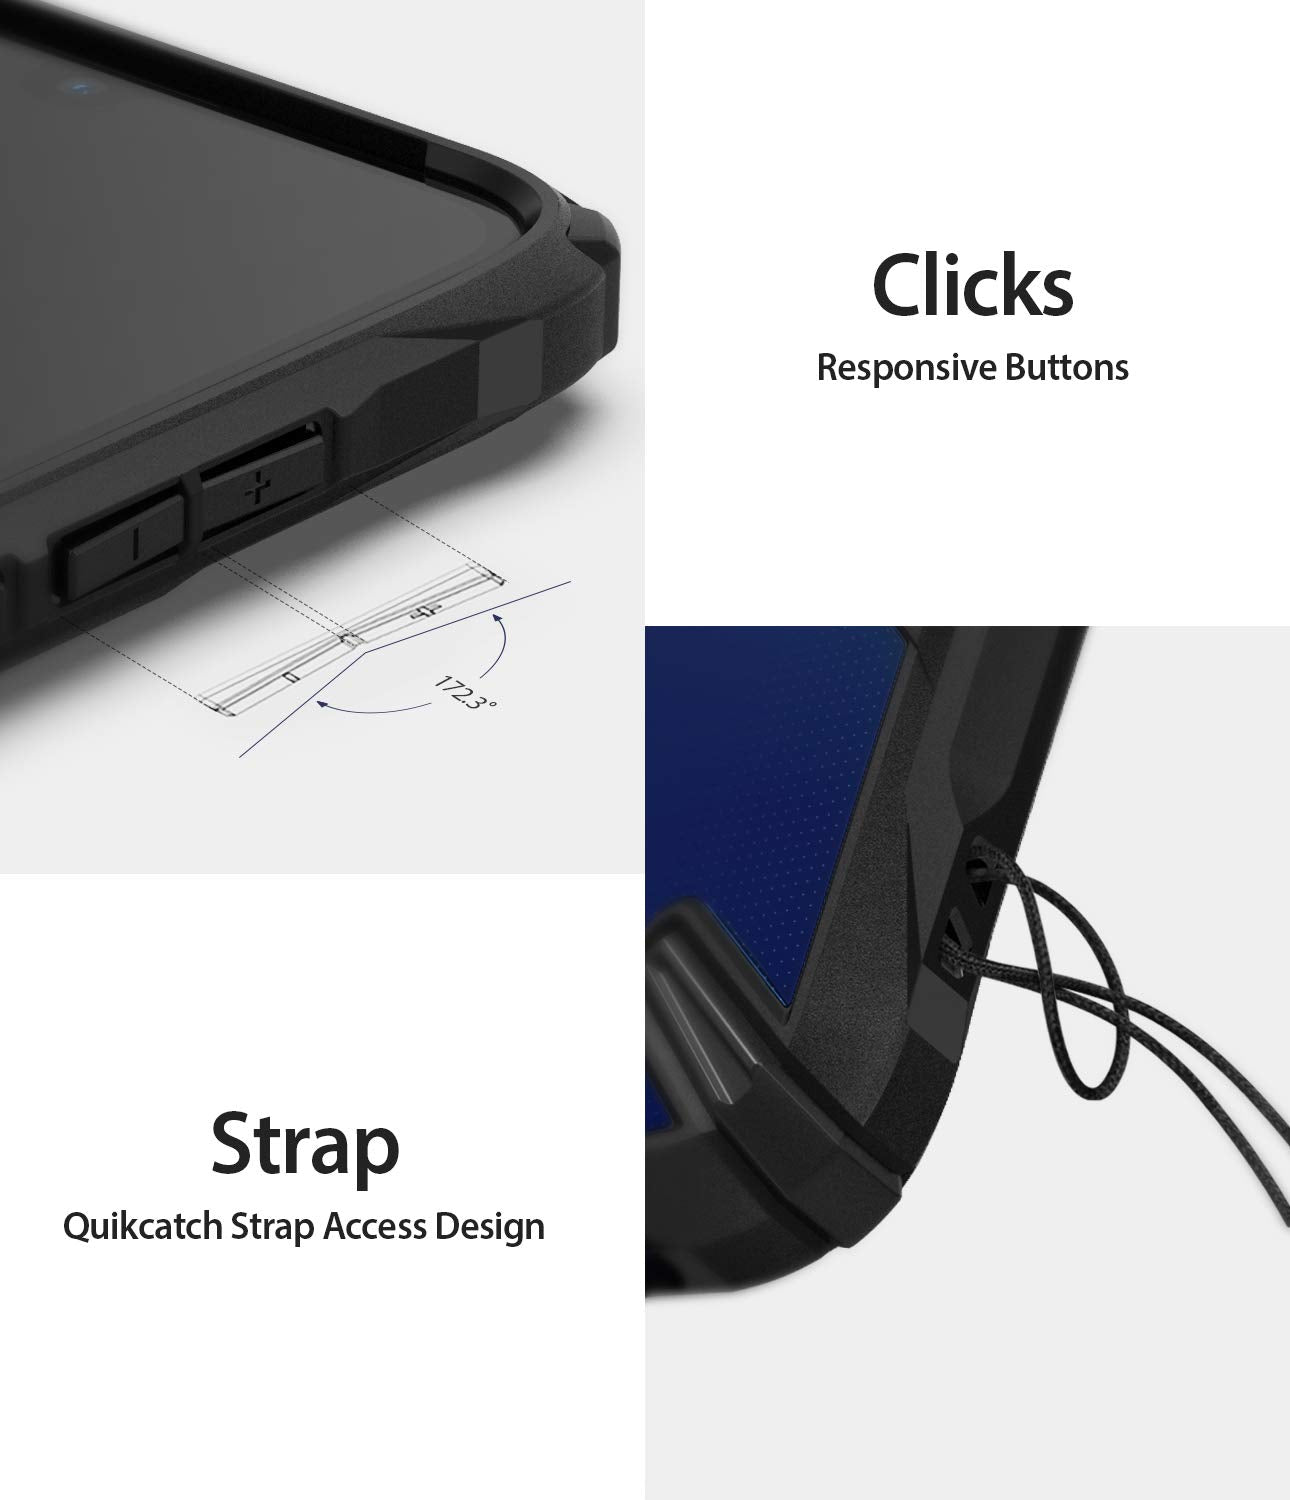 responsive buttons, quikcatch strap access design